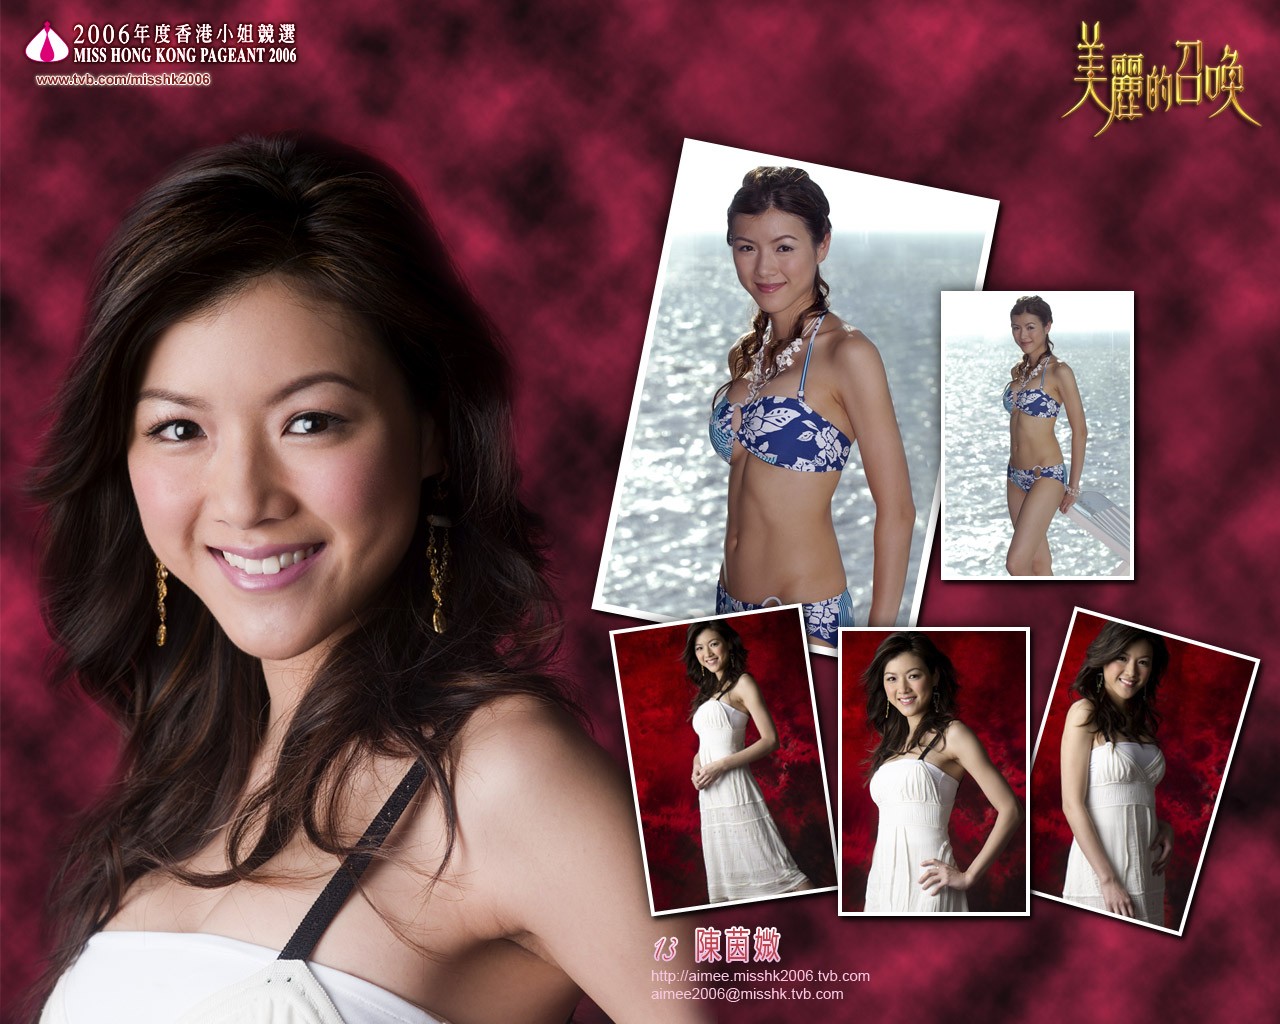 Miss Hong Kong 2006 Album #4 - 1280x1024